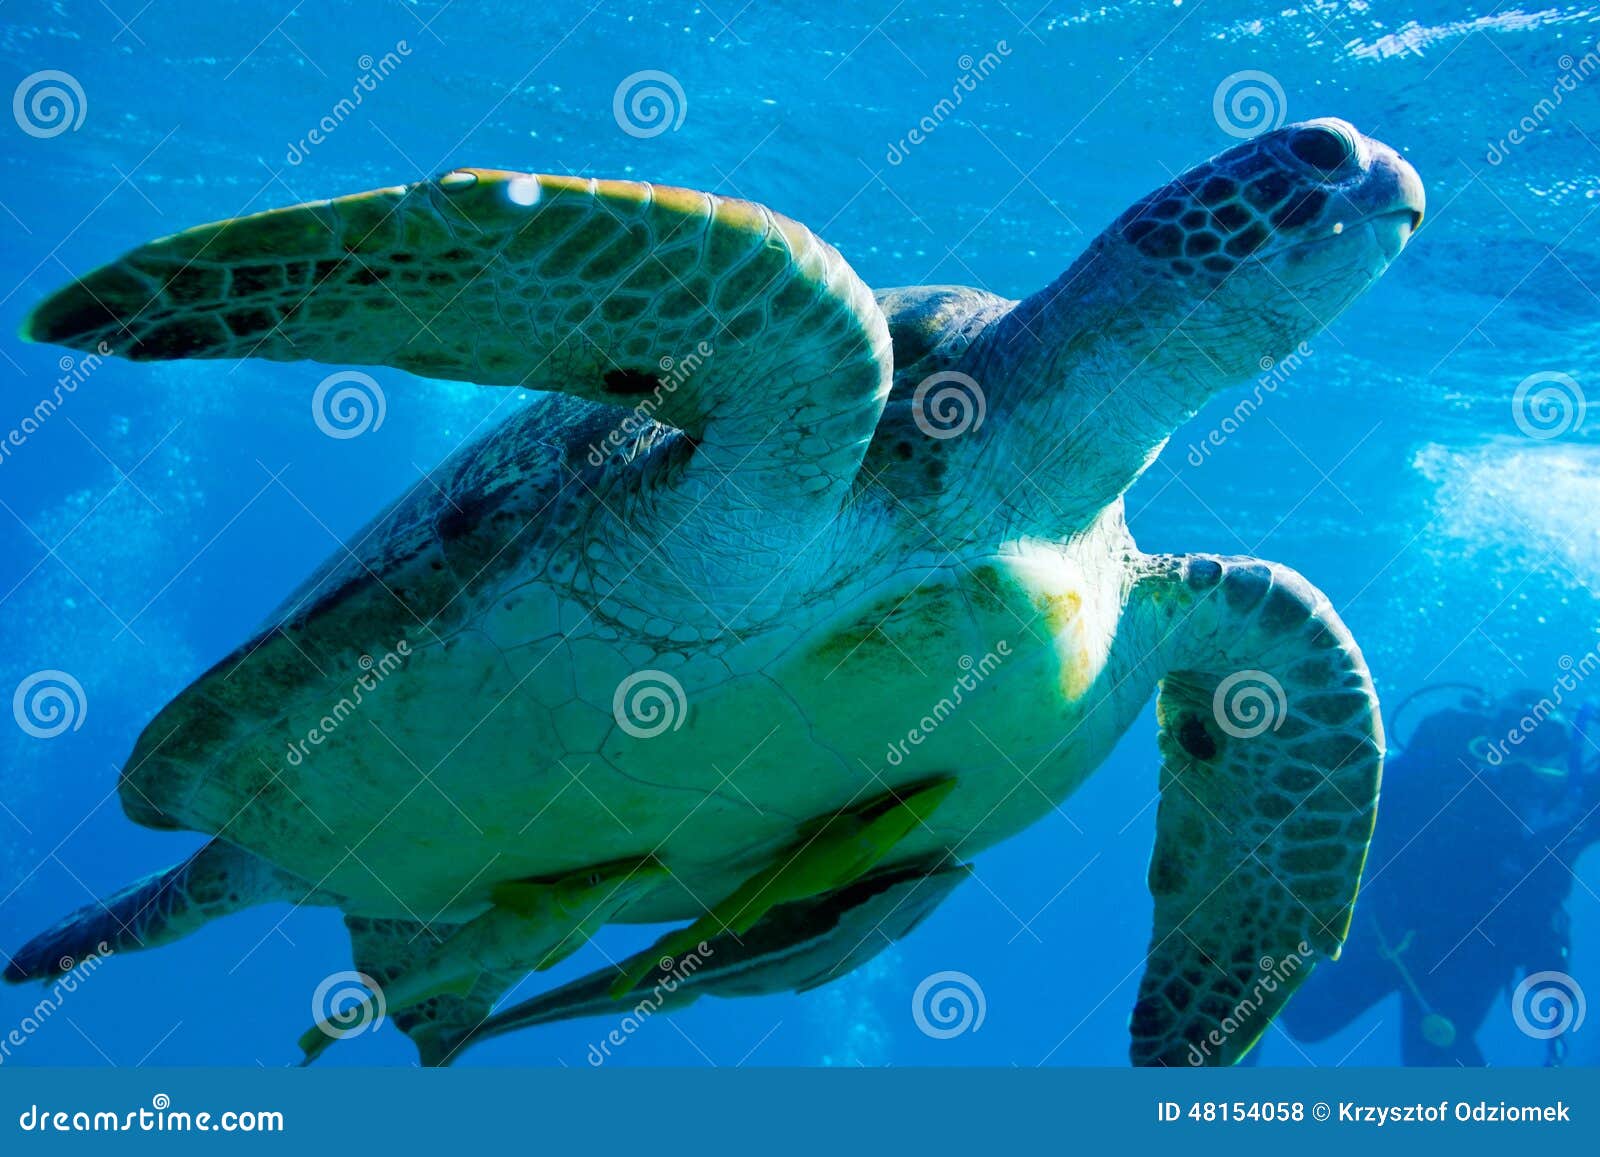 Coroa Vermelha Island. Meeresschildkröte auf dem blauen Hintergrund